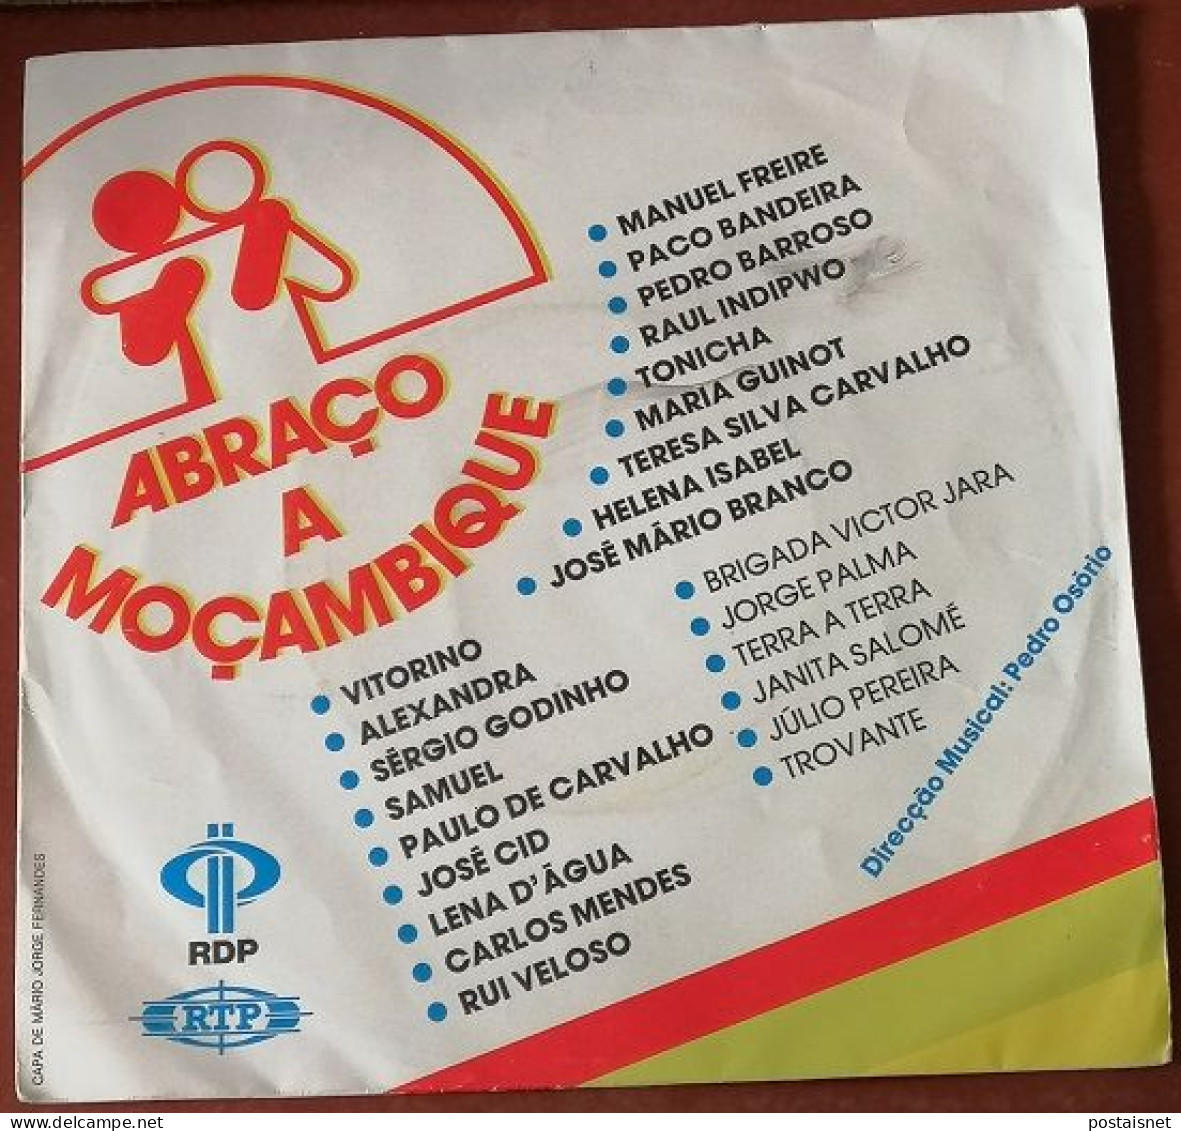 Single Abraço A Moçambique – 1985 – RDP E RTP - Música Del Mundo